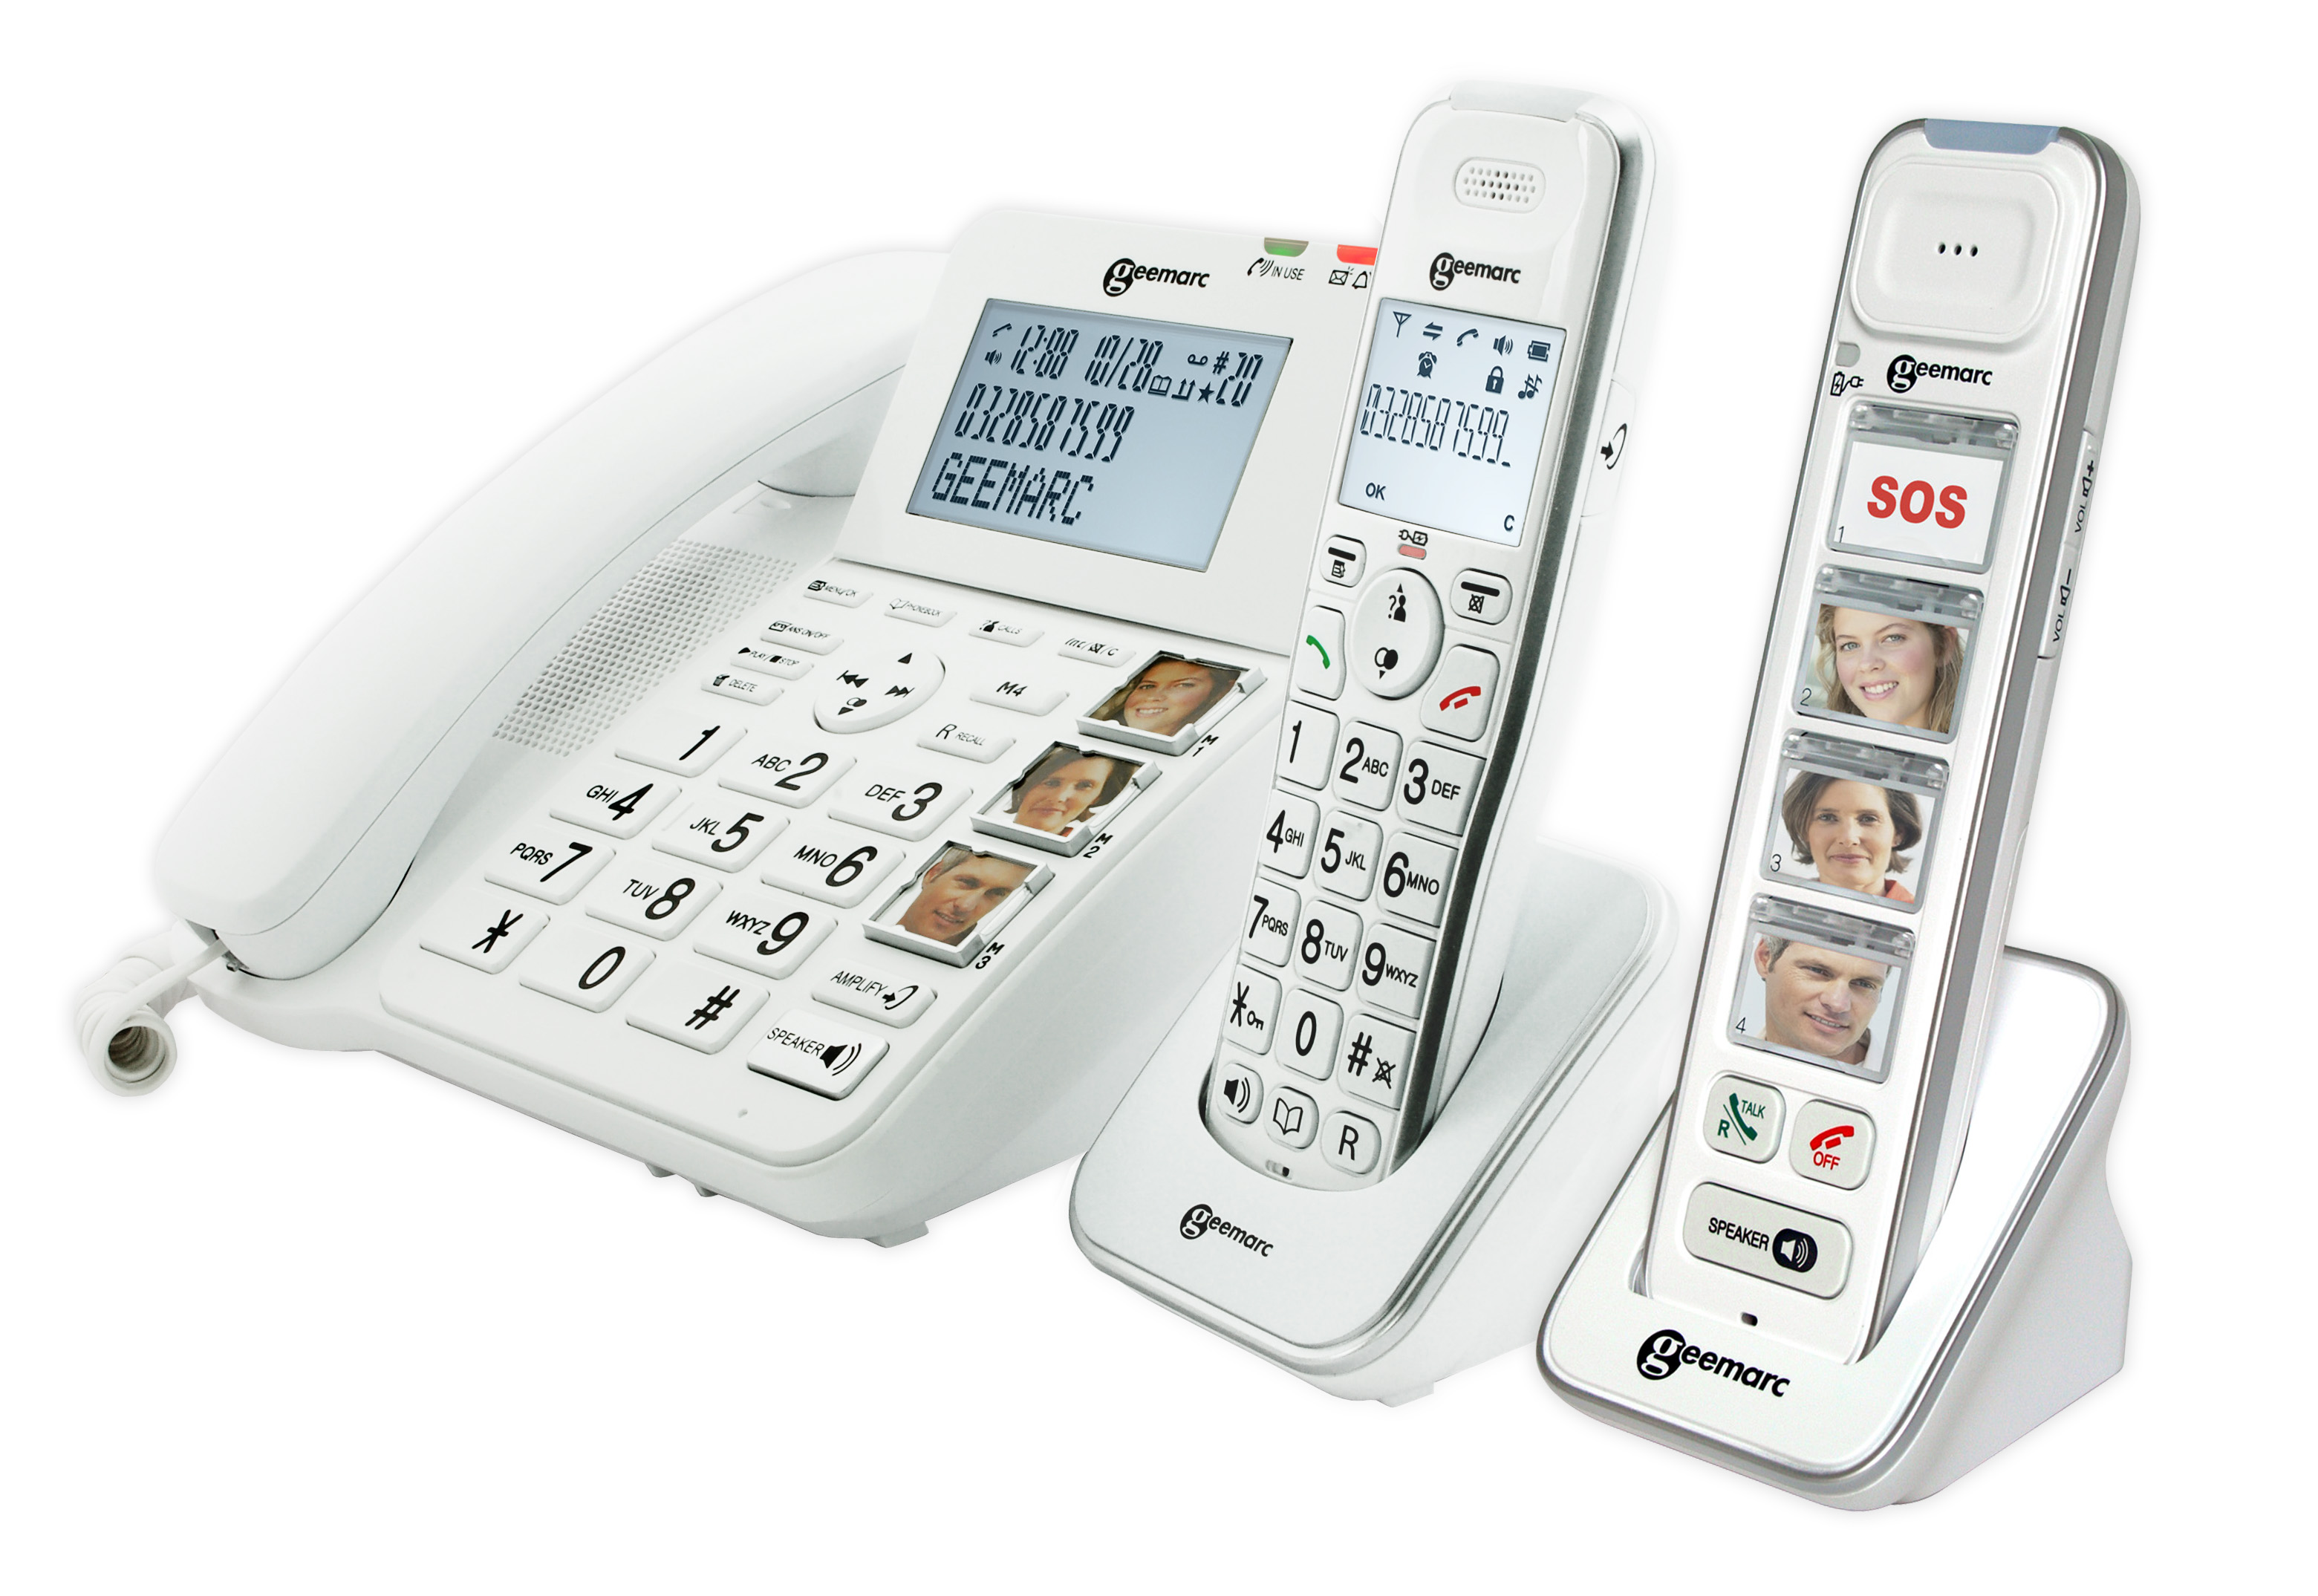 Téléphone fixe pour senior - Répondeur intégré